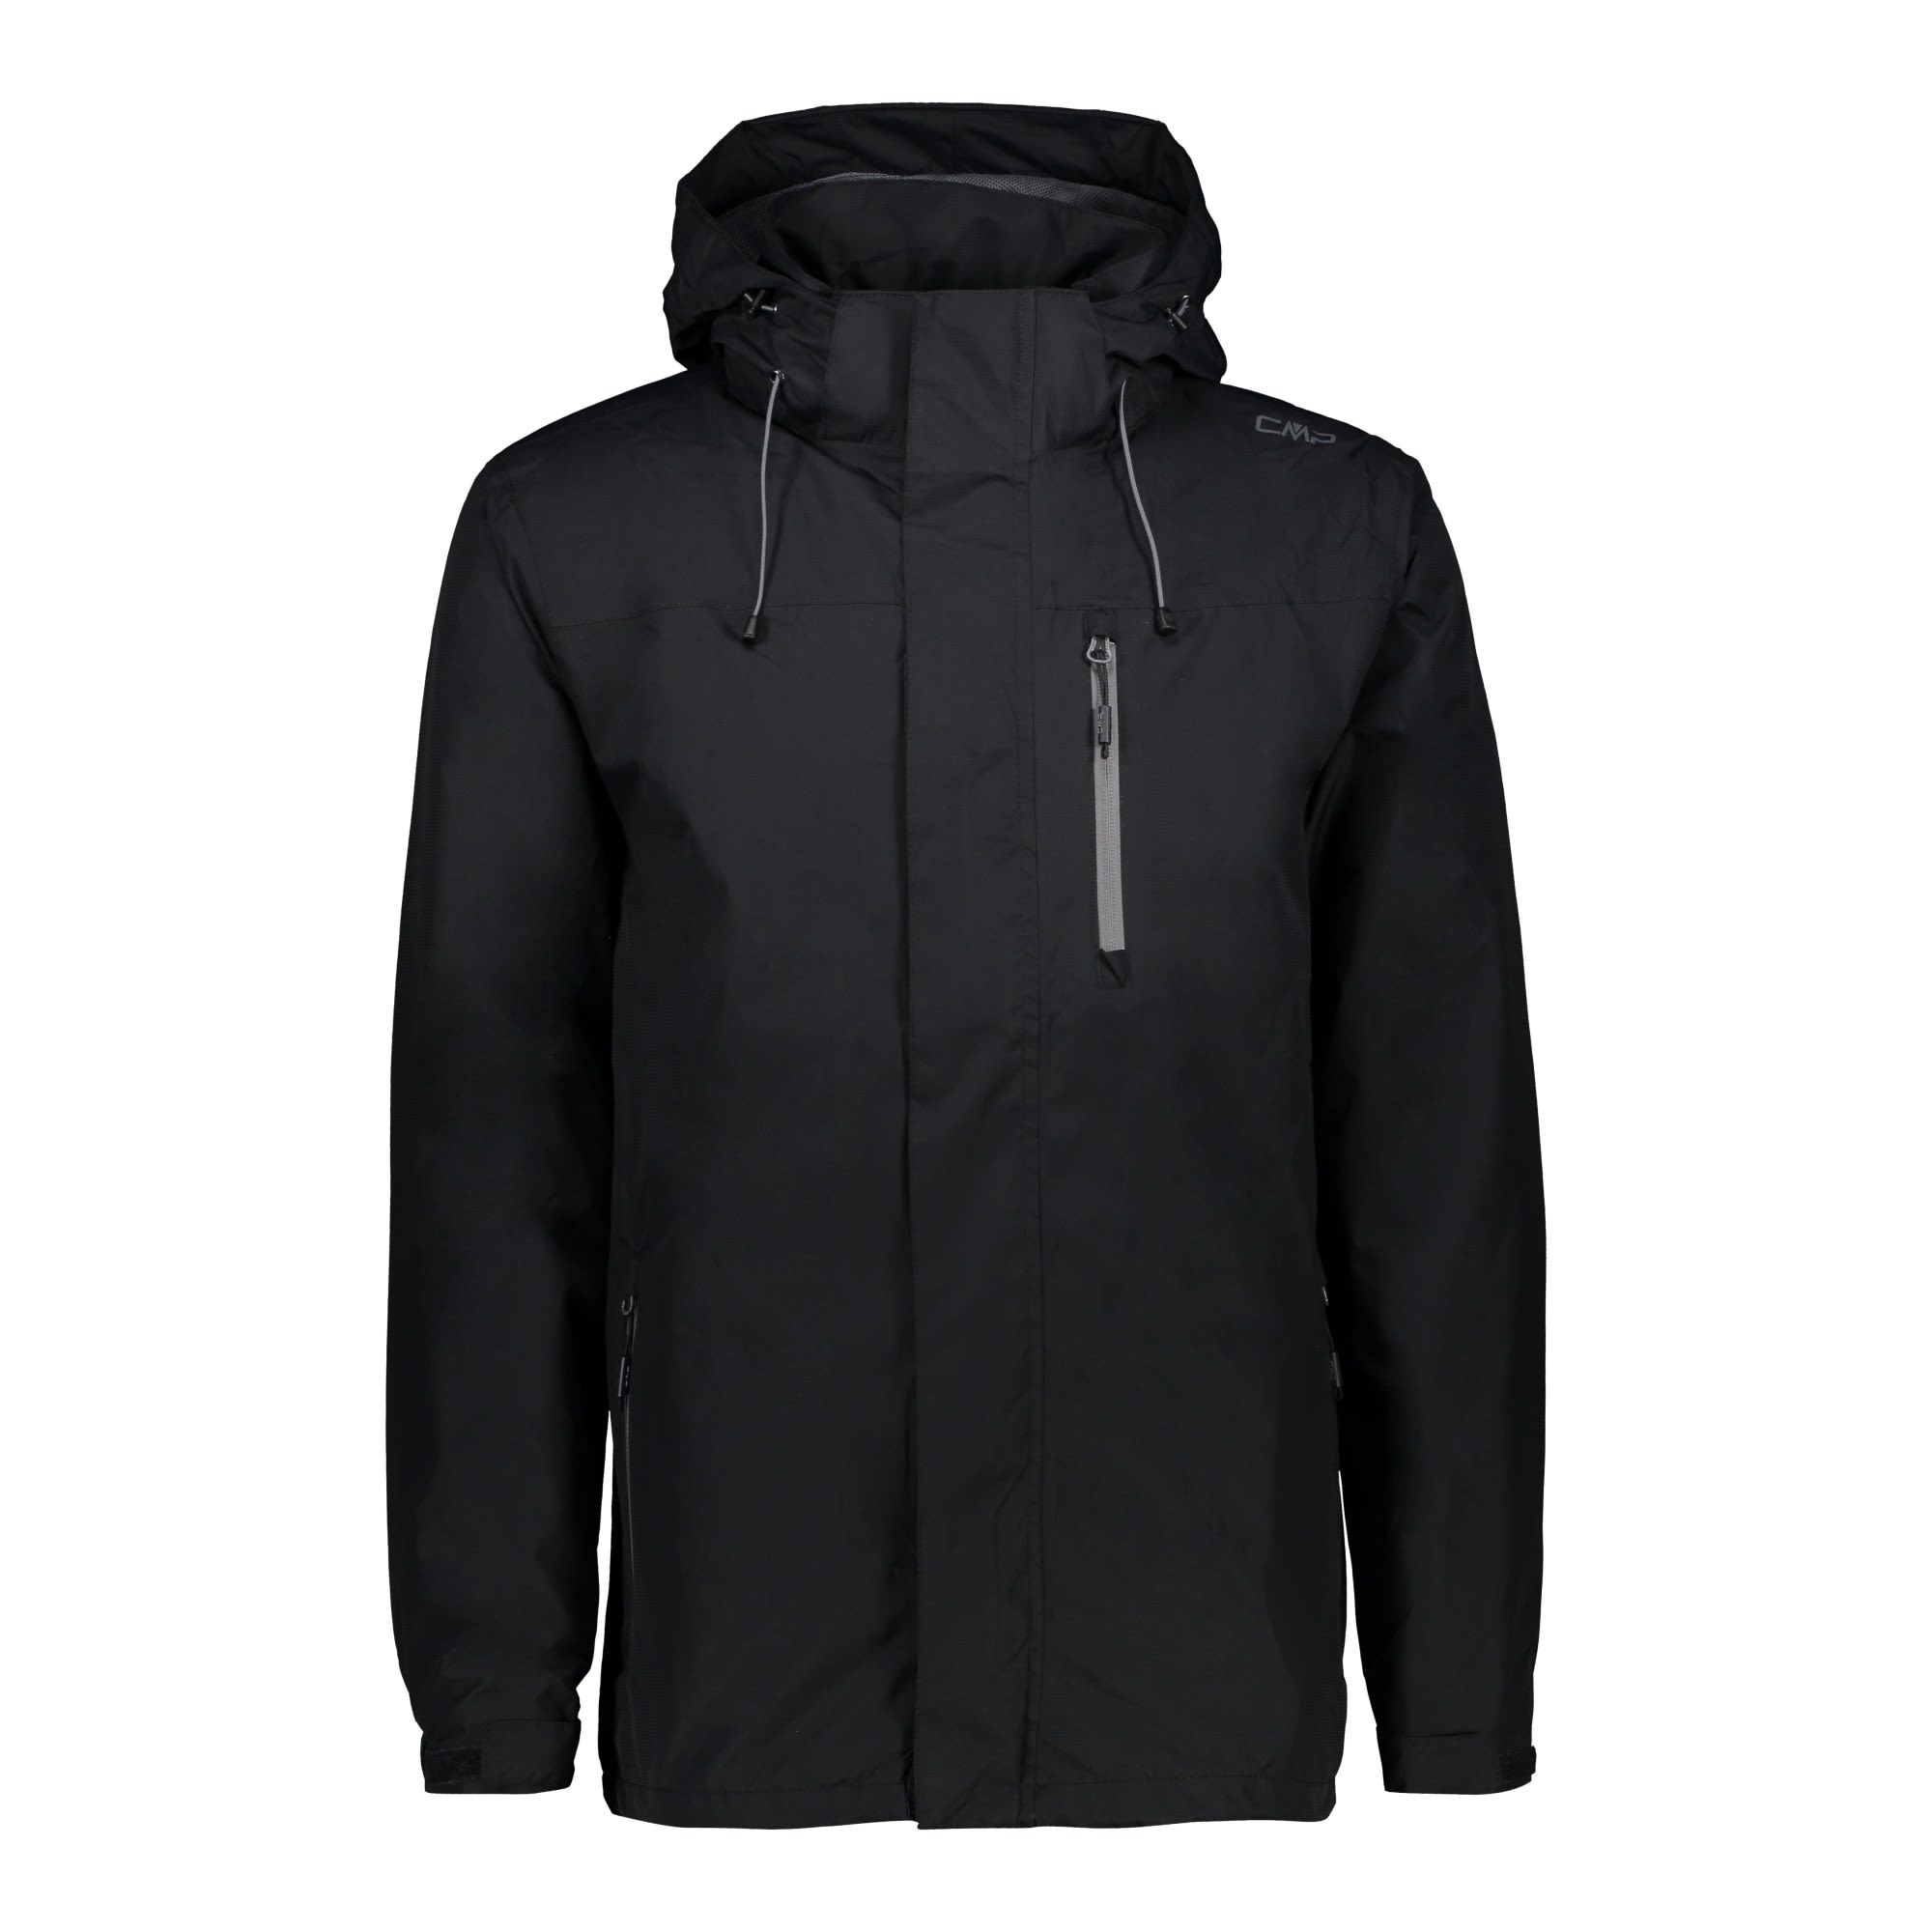 CMP Jacket Zip Hood Ventilation Grau- Male Regenjacken und Hardshells- Grsse 46 - Farbe Anthracite